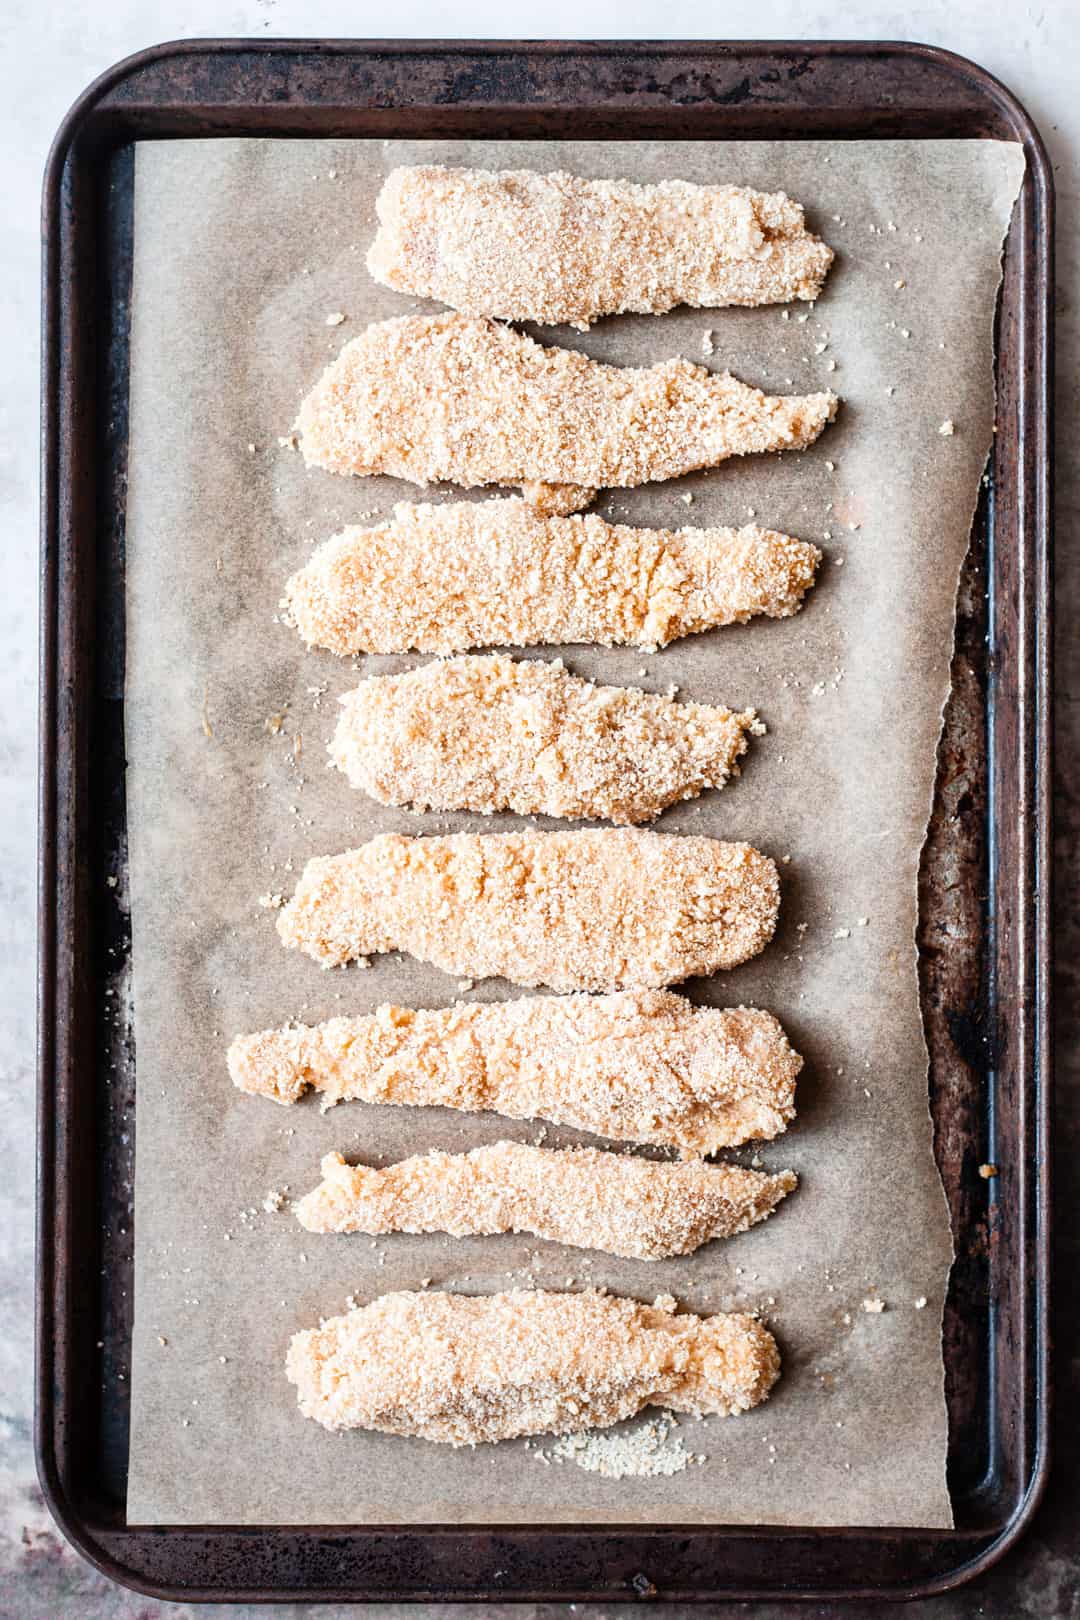 Breaded chicken goujons on a baking tray.